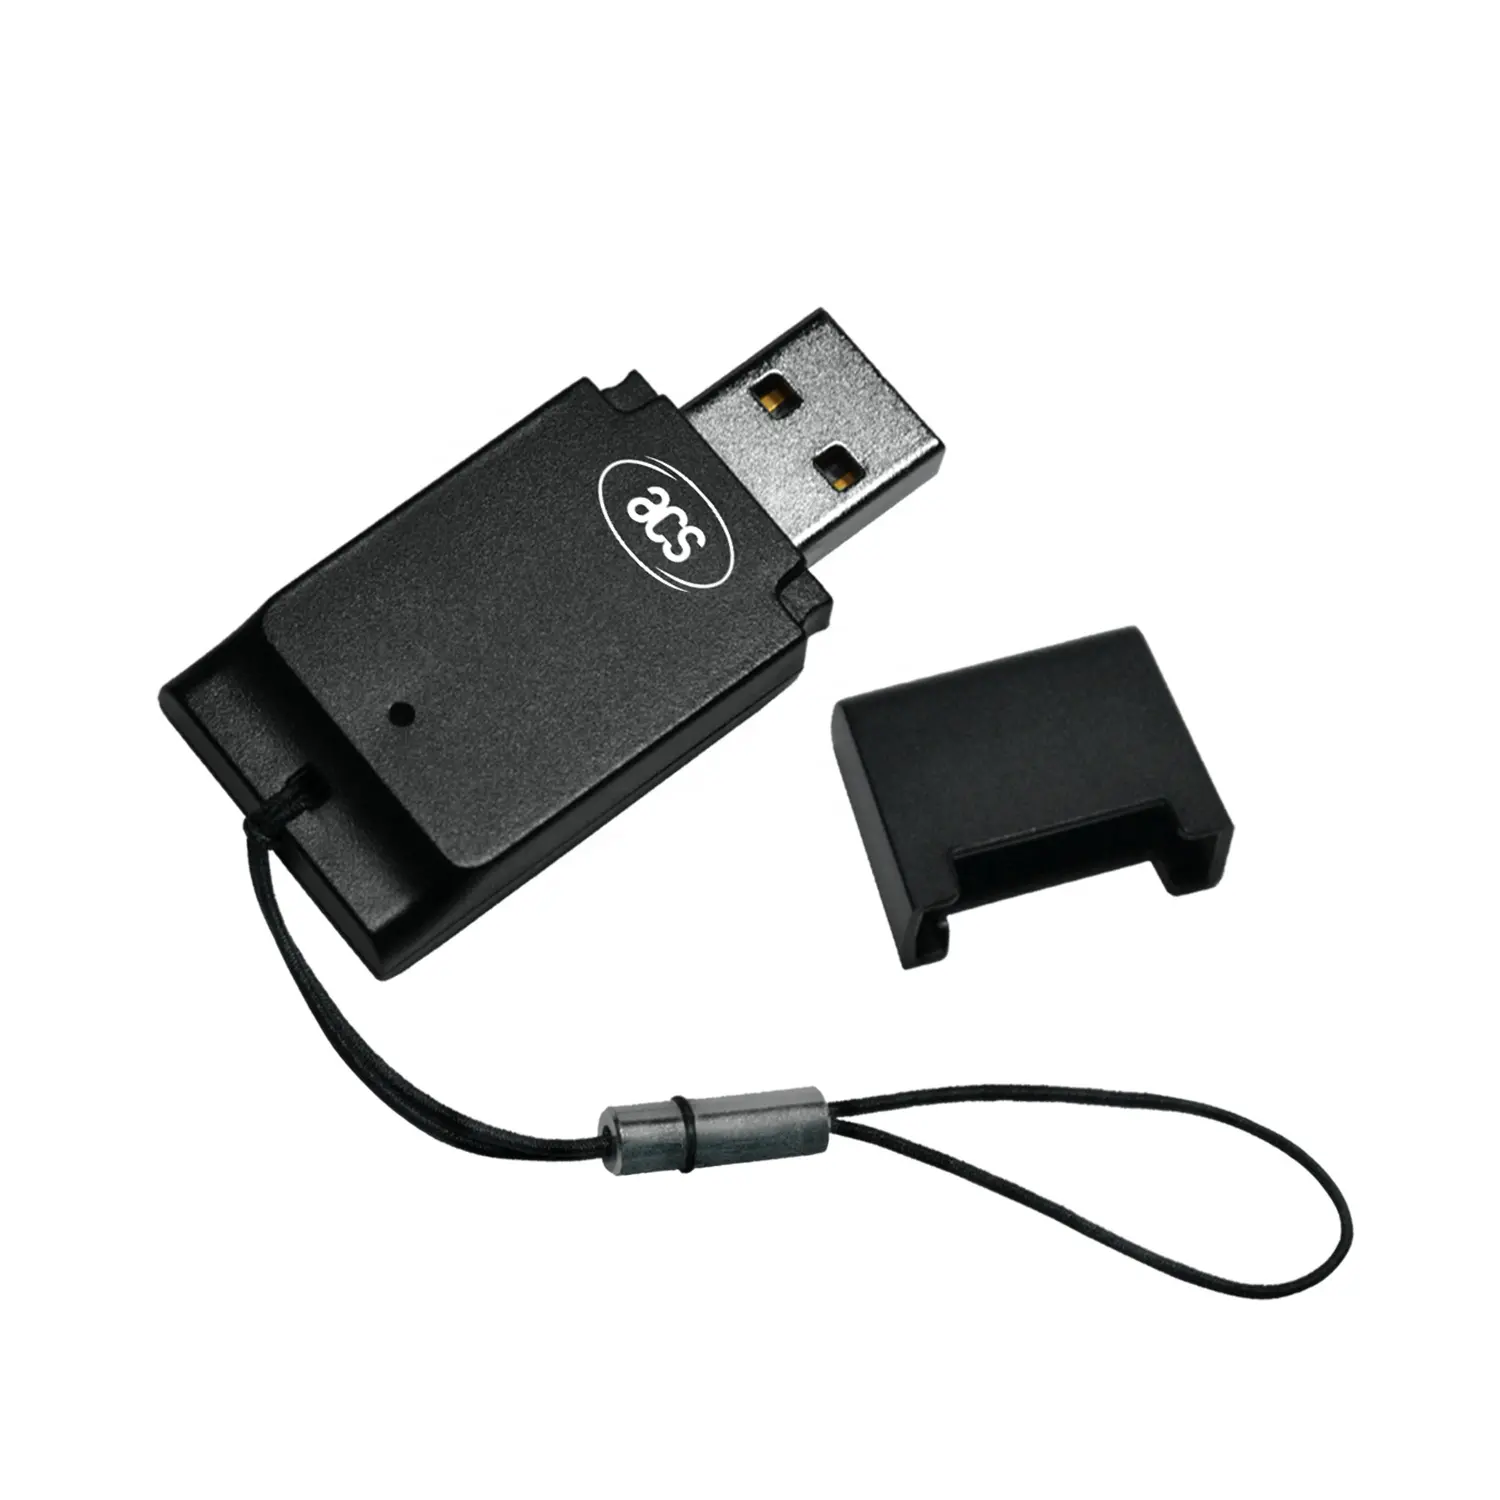 Lecteur de carte sim multi-mobile USB CCID ISO 7816 ACR39T-A1